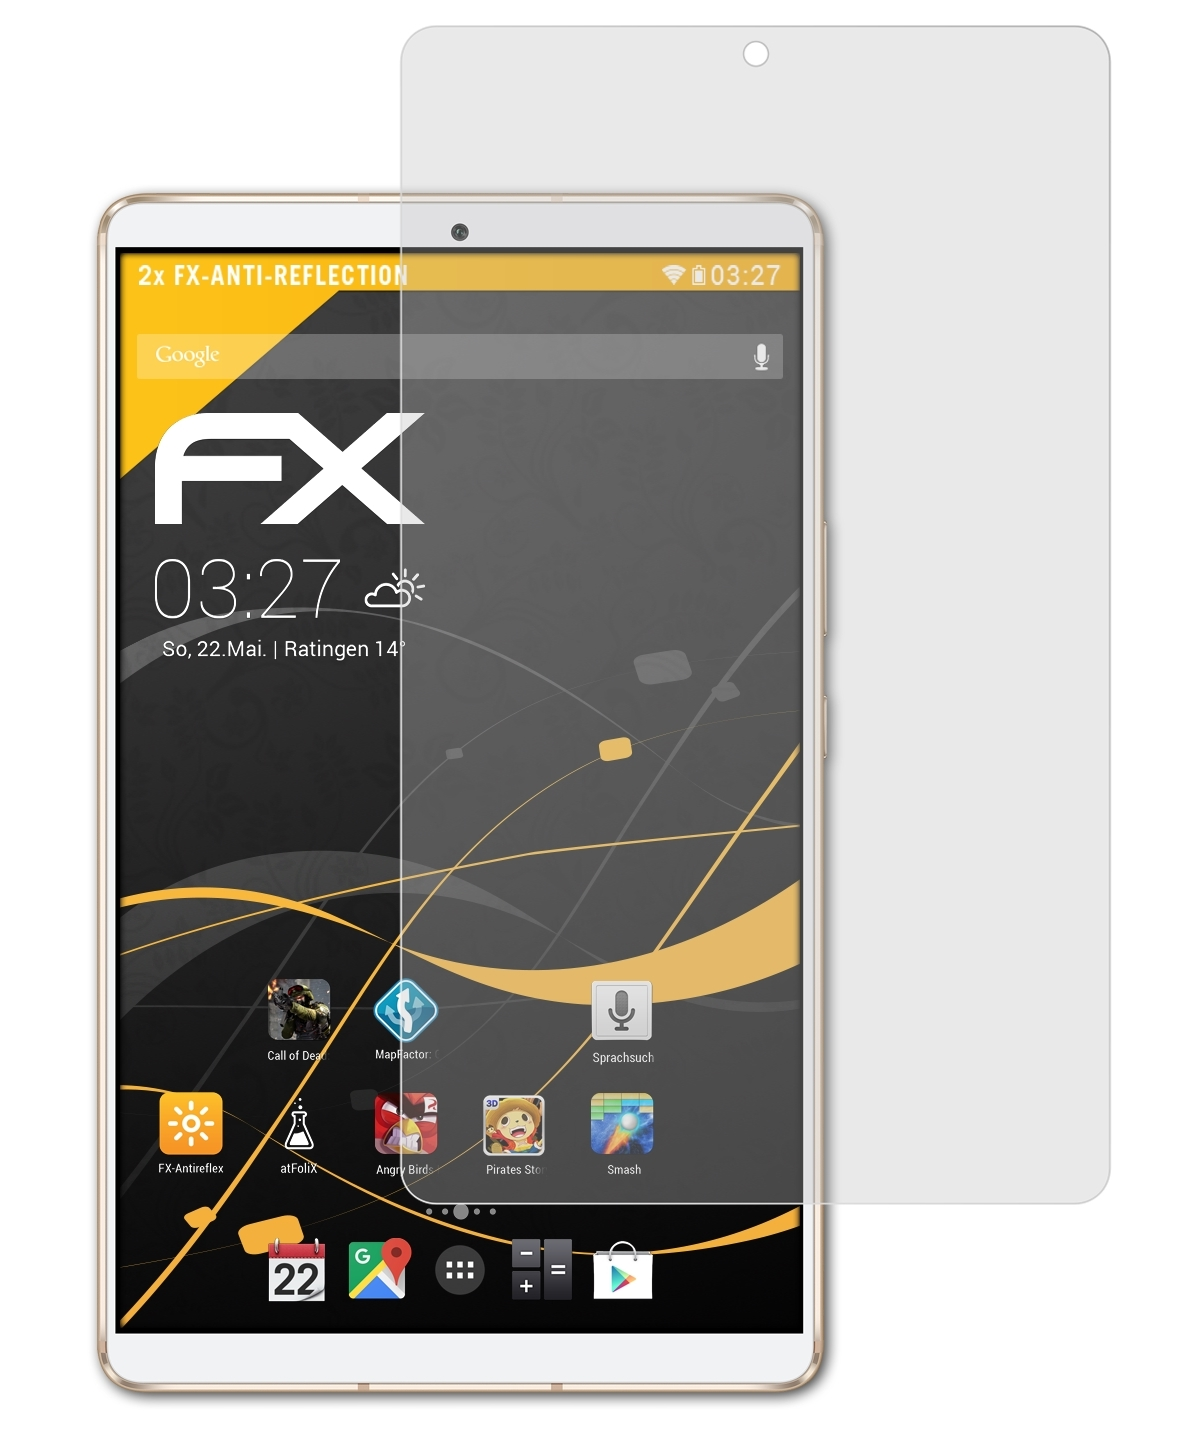 FX-Antireflex Huawei M6 2x Displayschutz(für ATFOLIX MediaPad 8.4)